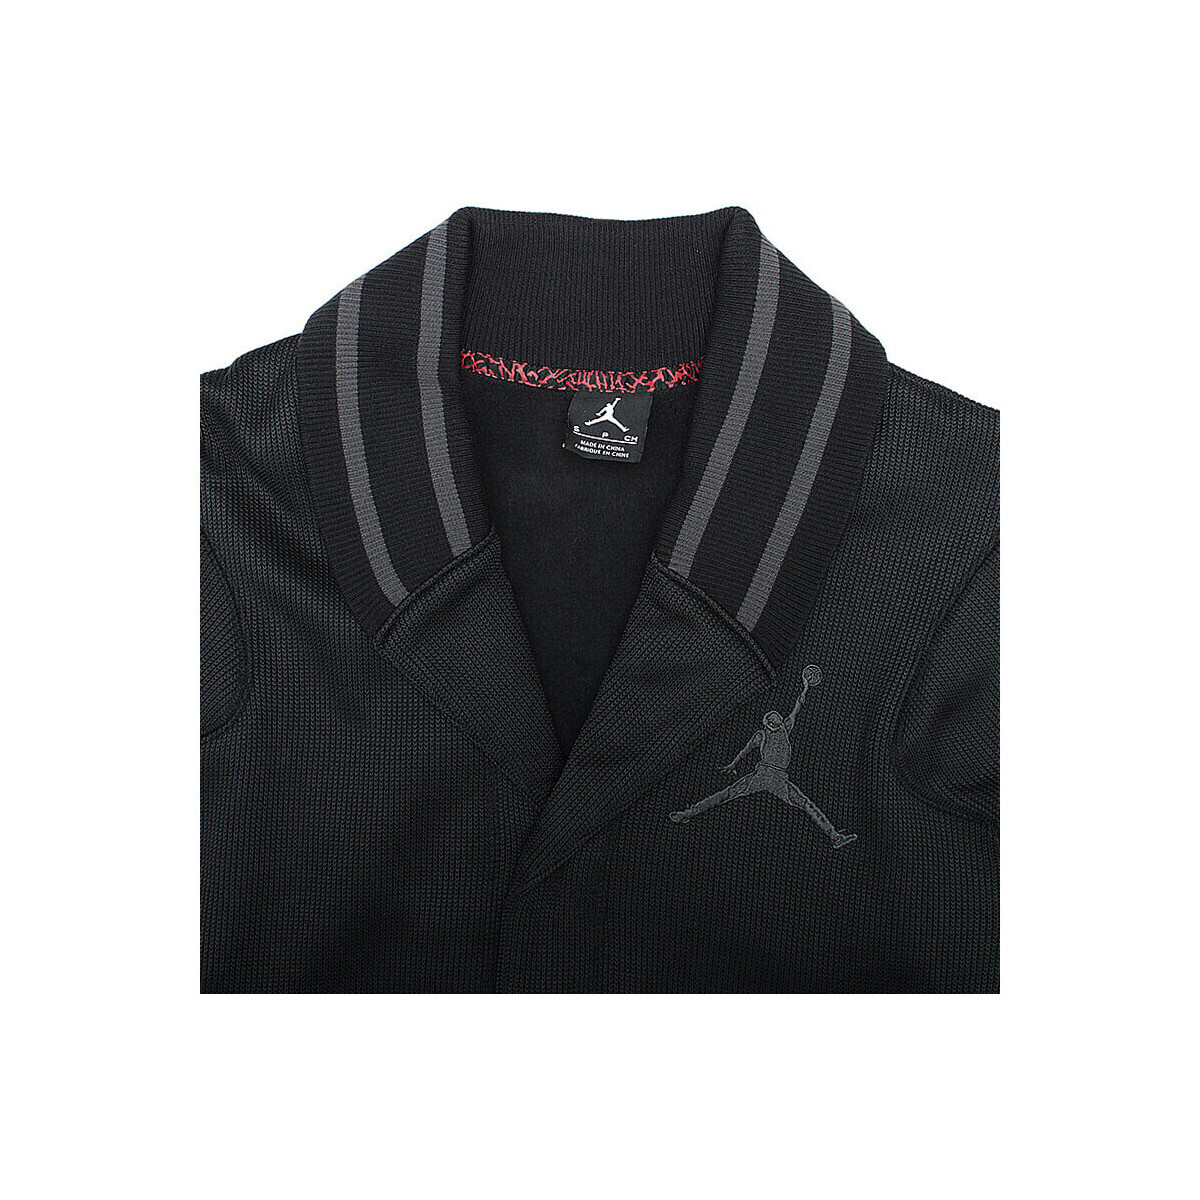 Nike Noir Jordan Varsity Shawl - 576805-010 RPSGkr4G